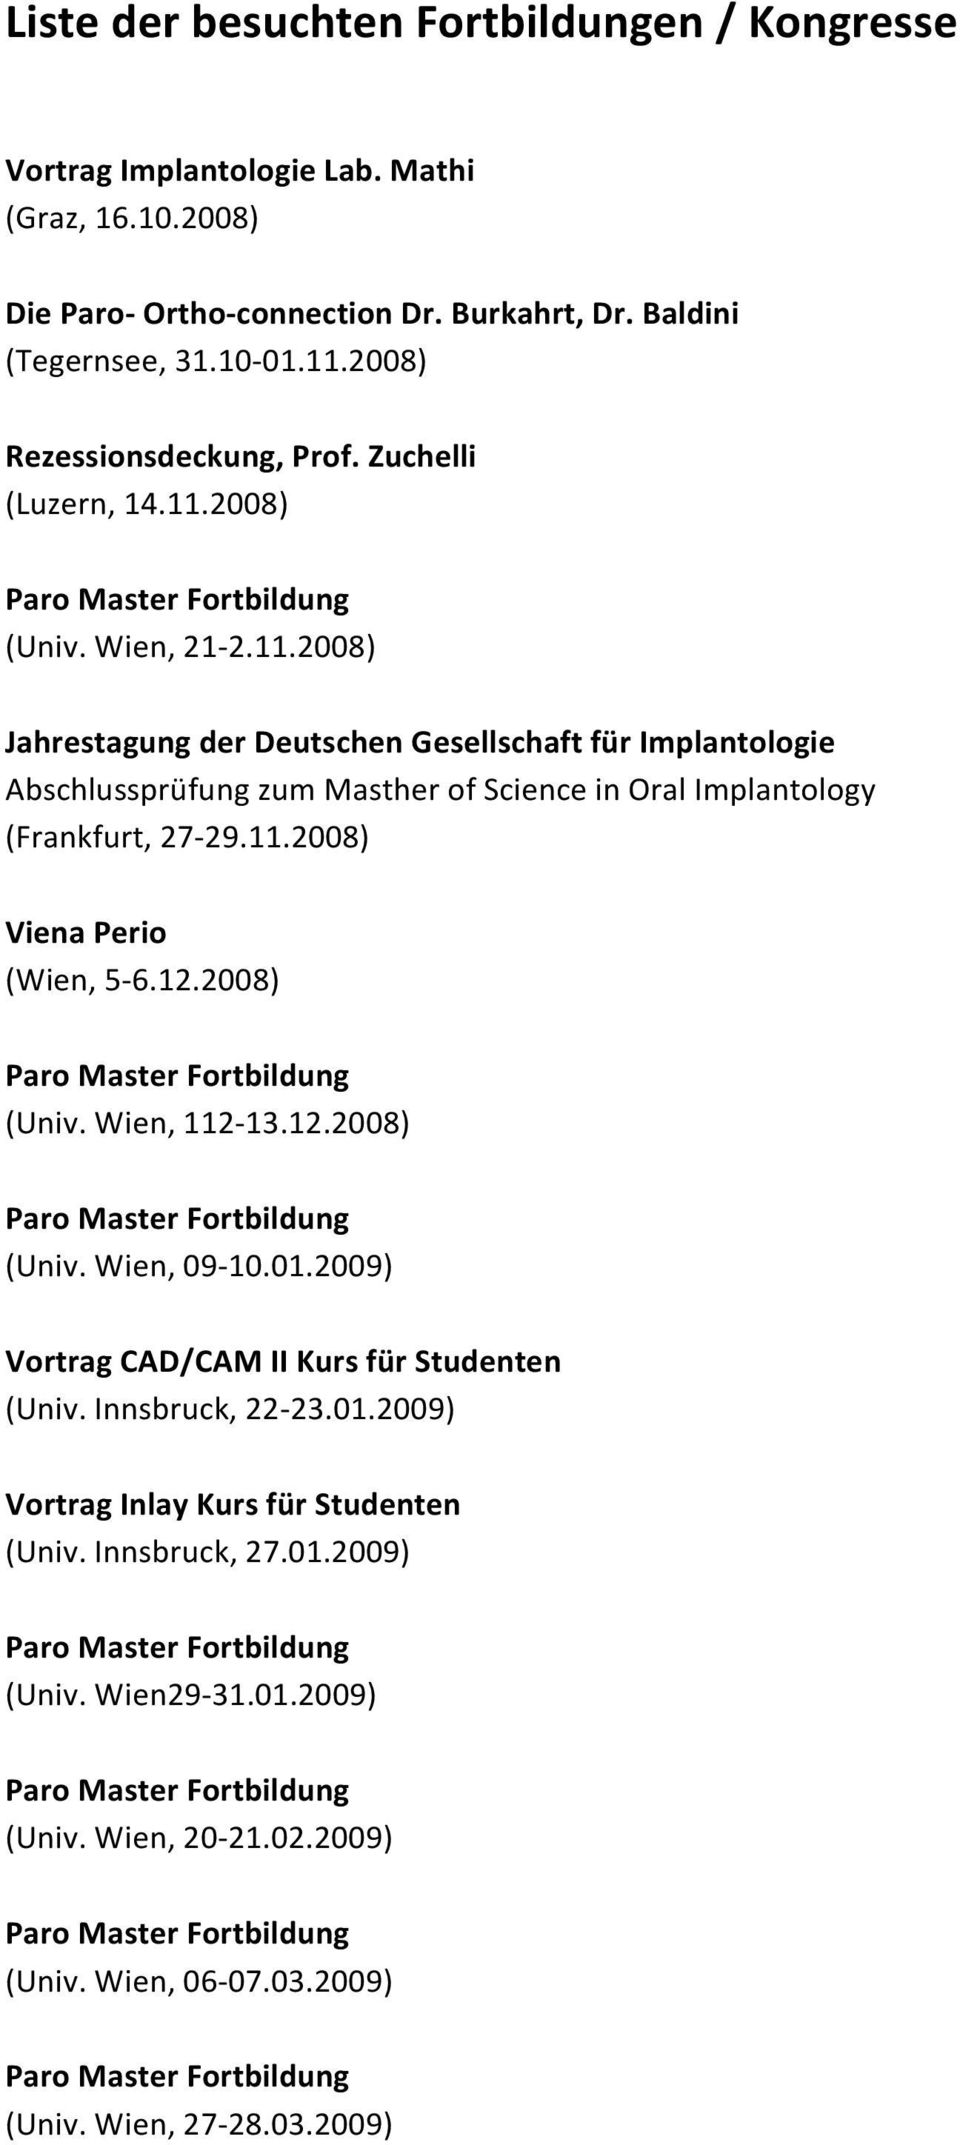 11.2008) Viena Perio (Wien, 5-6.12.2008) (Univ. Wien, 112-13.12.2008) (Univ. Wien, 09-10.01.2009) Vortrag CAD/CAM II Kurs für Studenten (Univ. Innsbruck, 22-23.01.2009) Vortrag Inlay Kurs für Studenten (Univ.